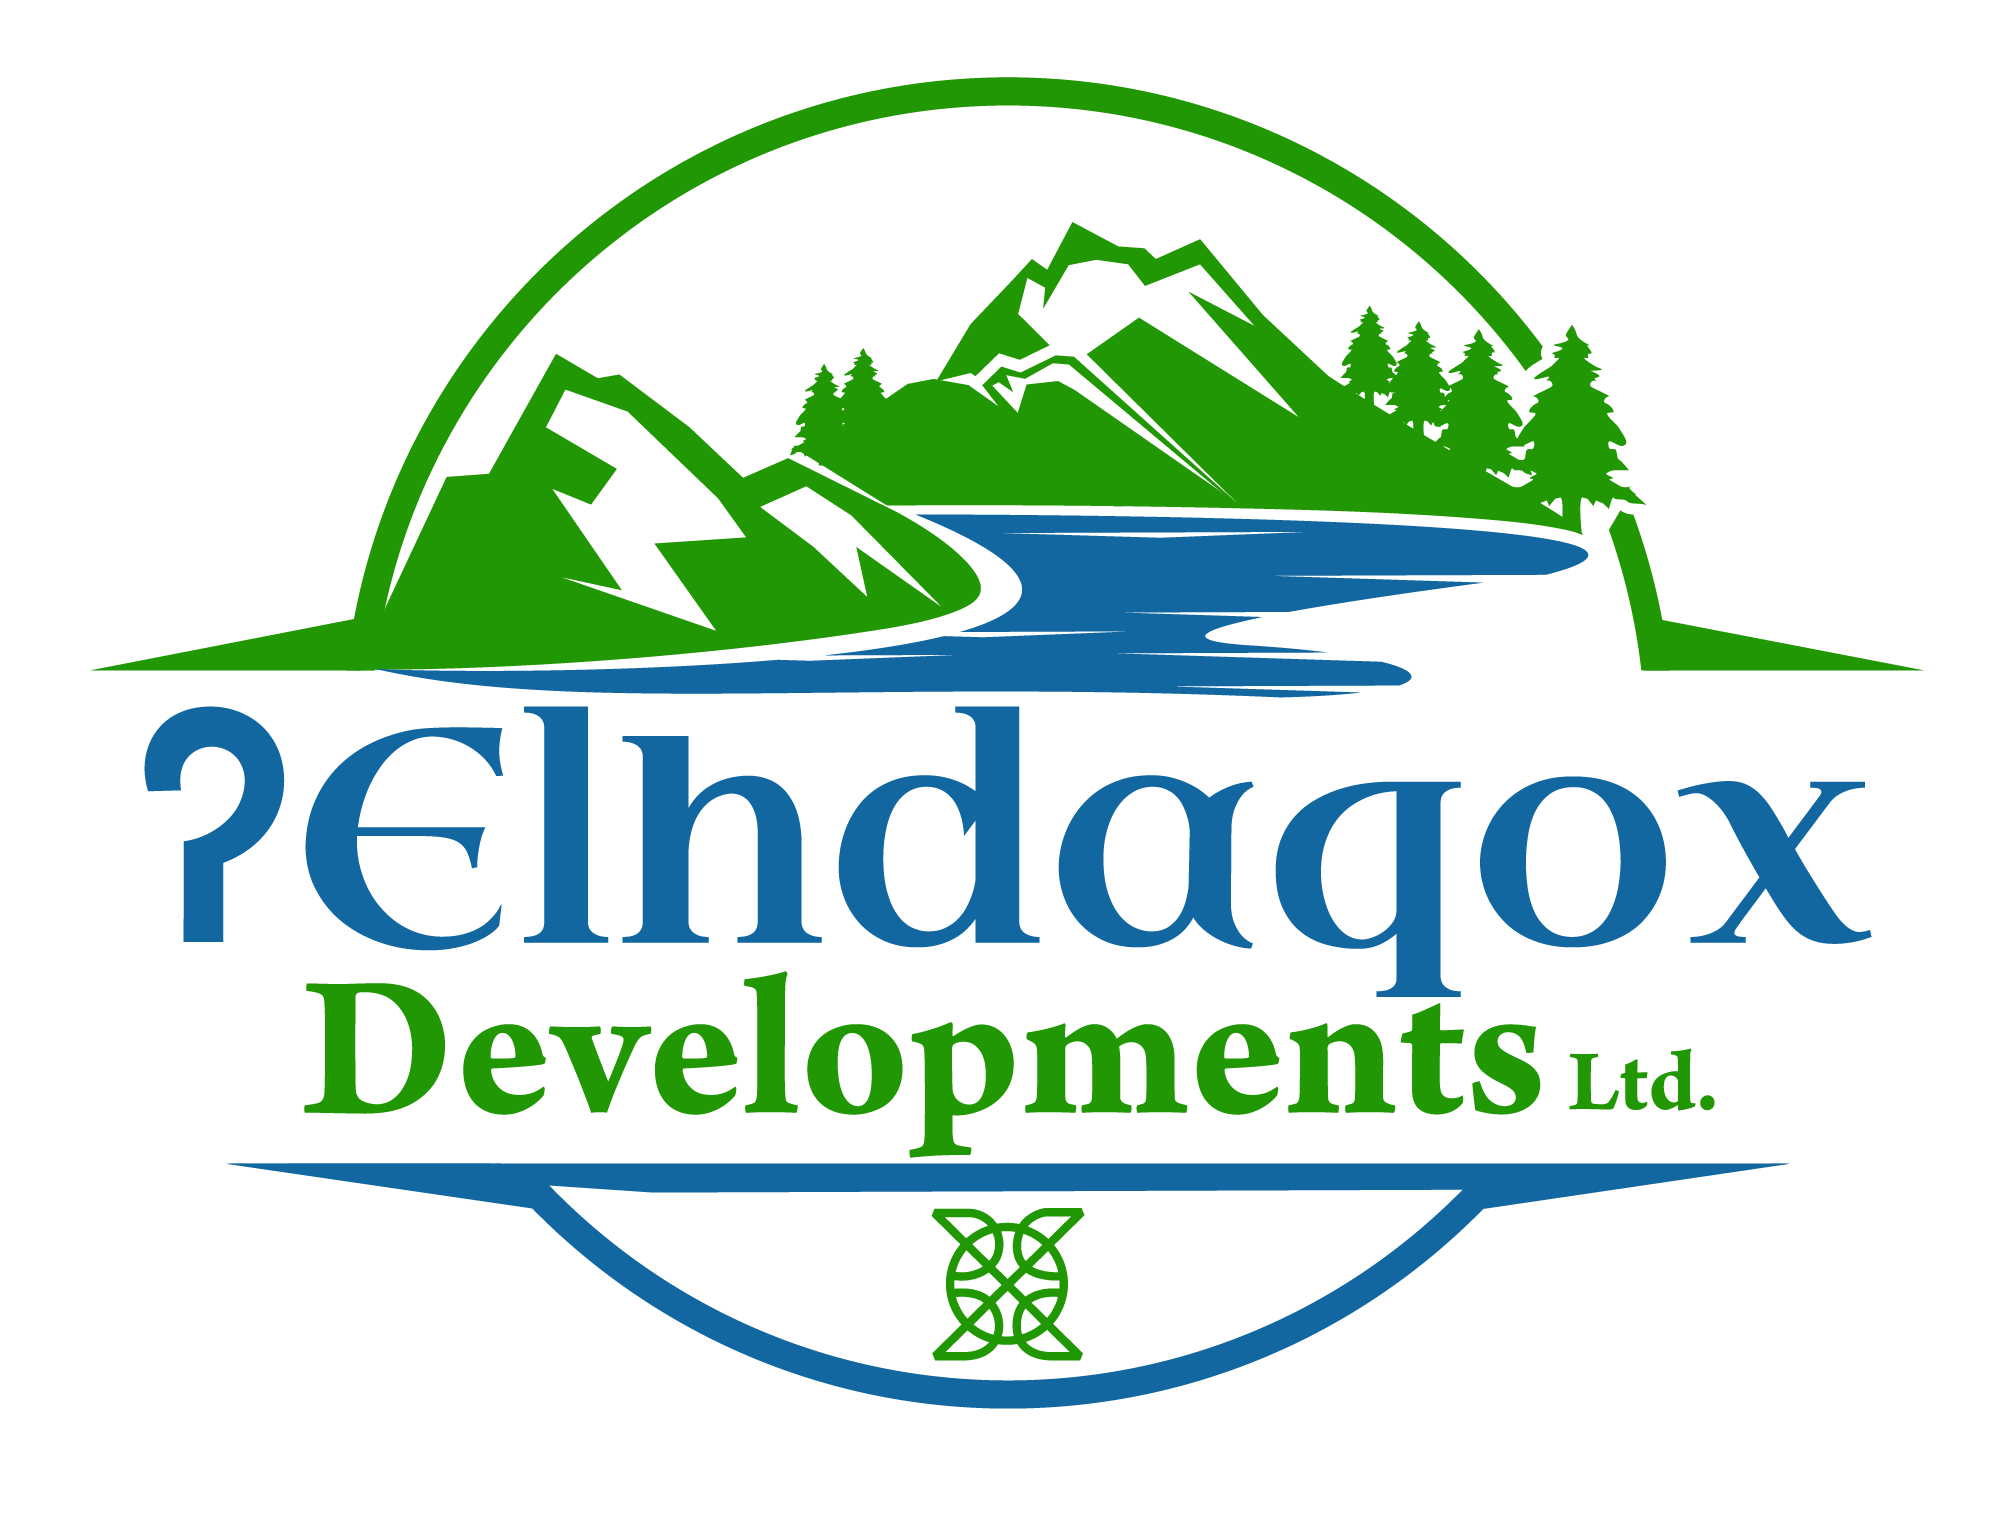 Elhdaqox Development Ltd Logo